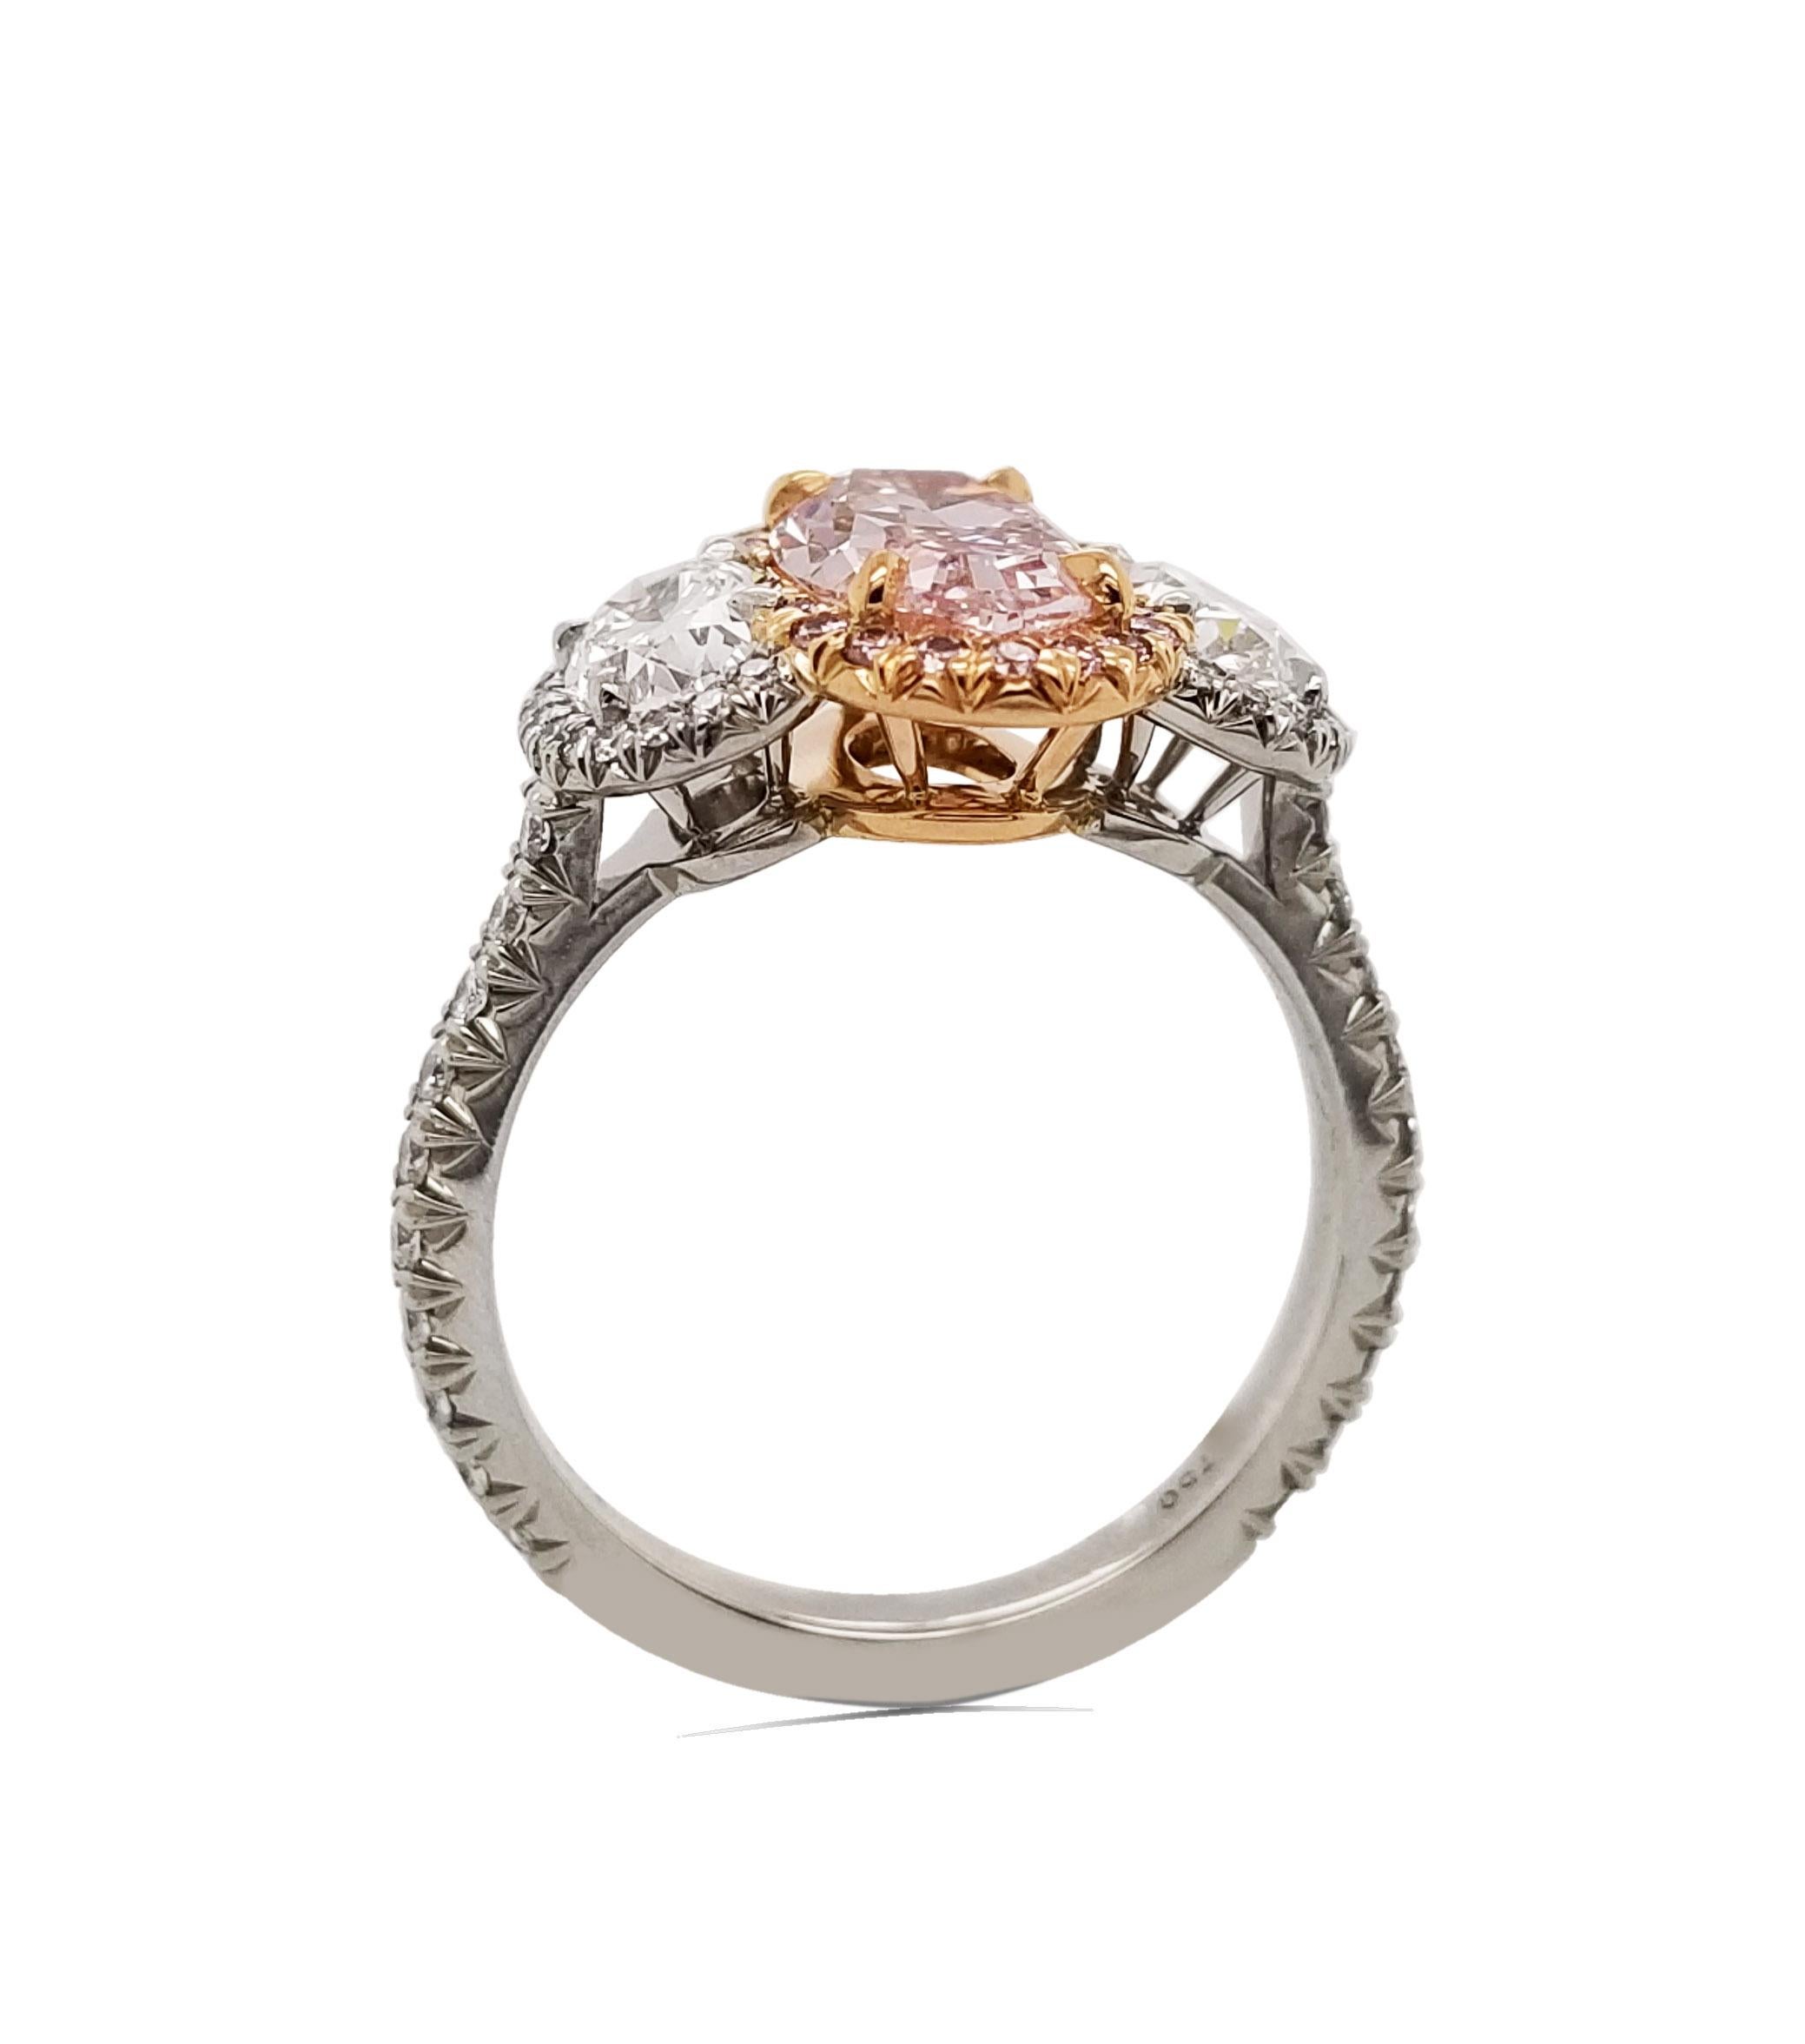 sophia loren engagement ring